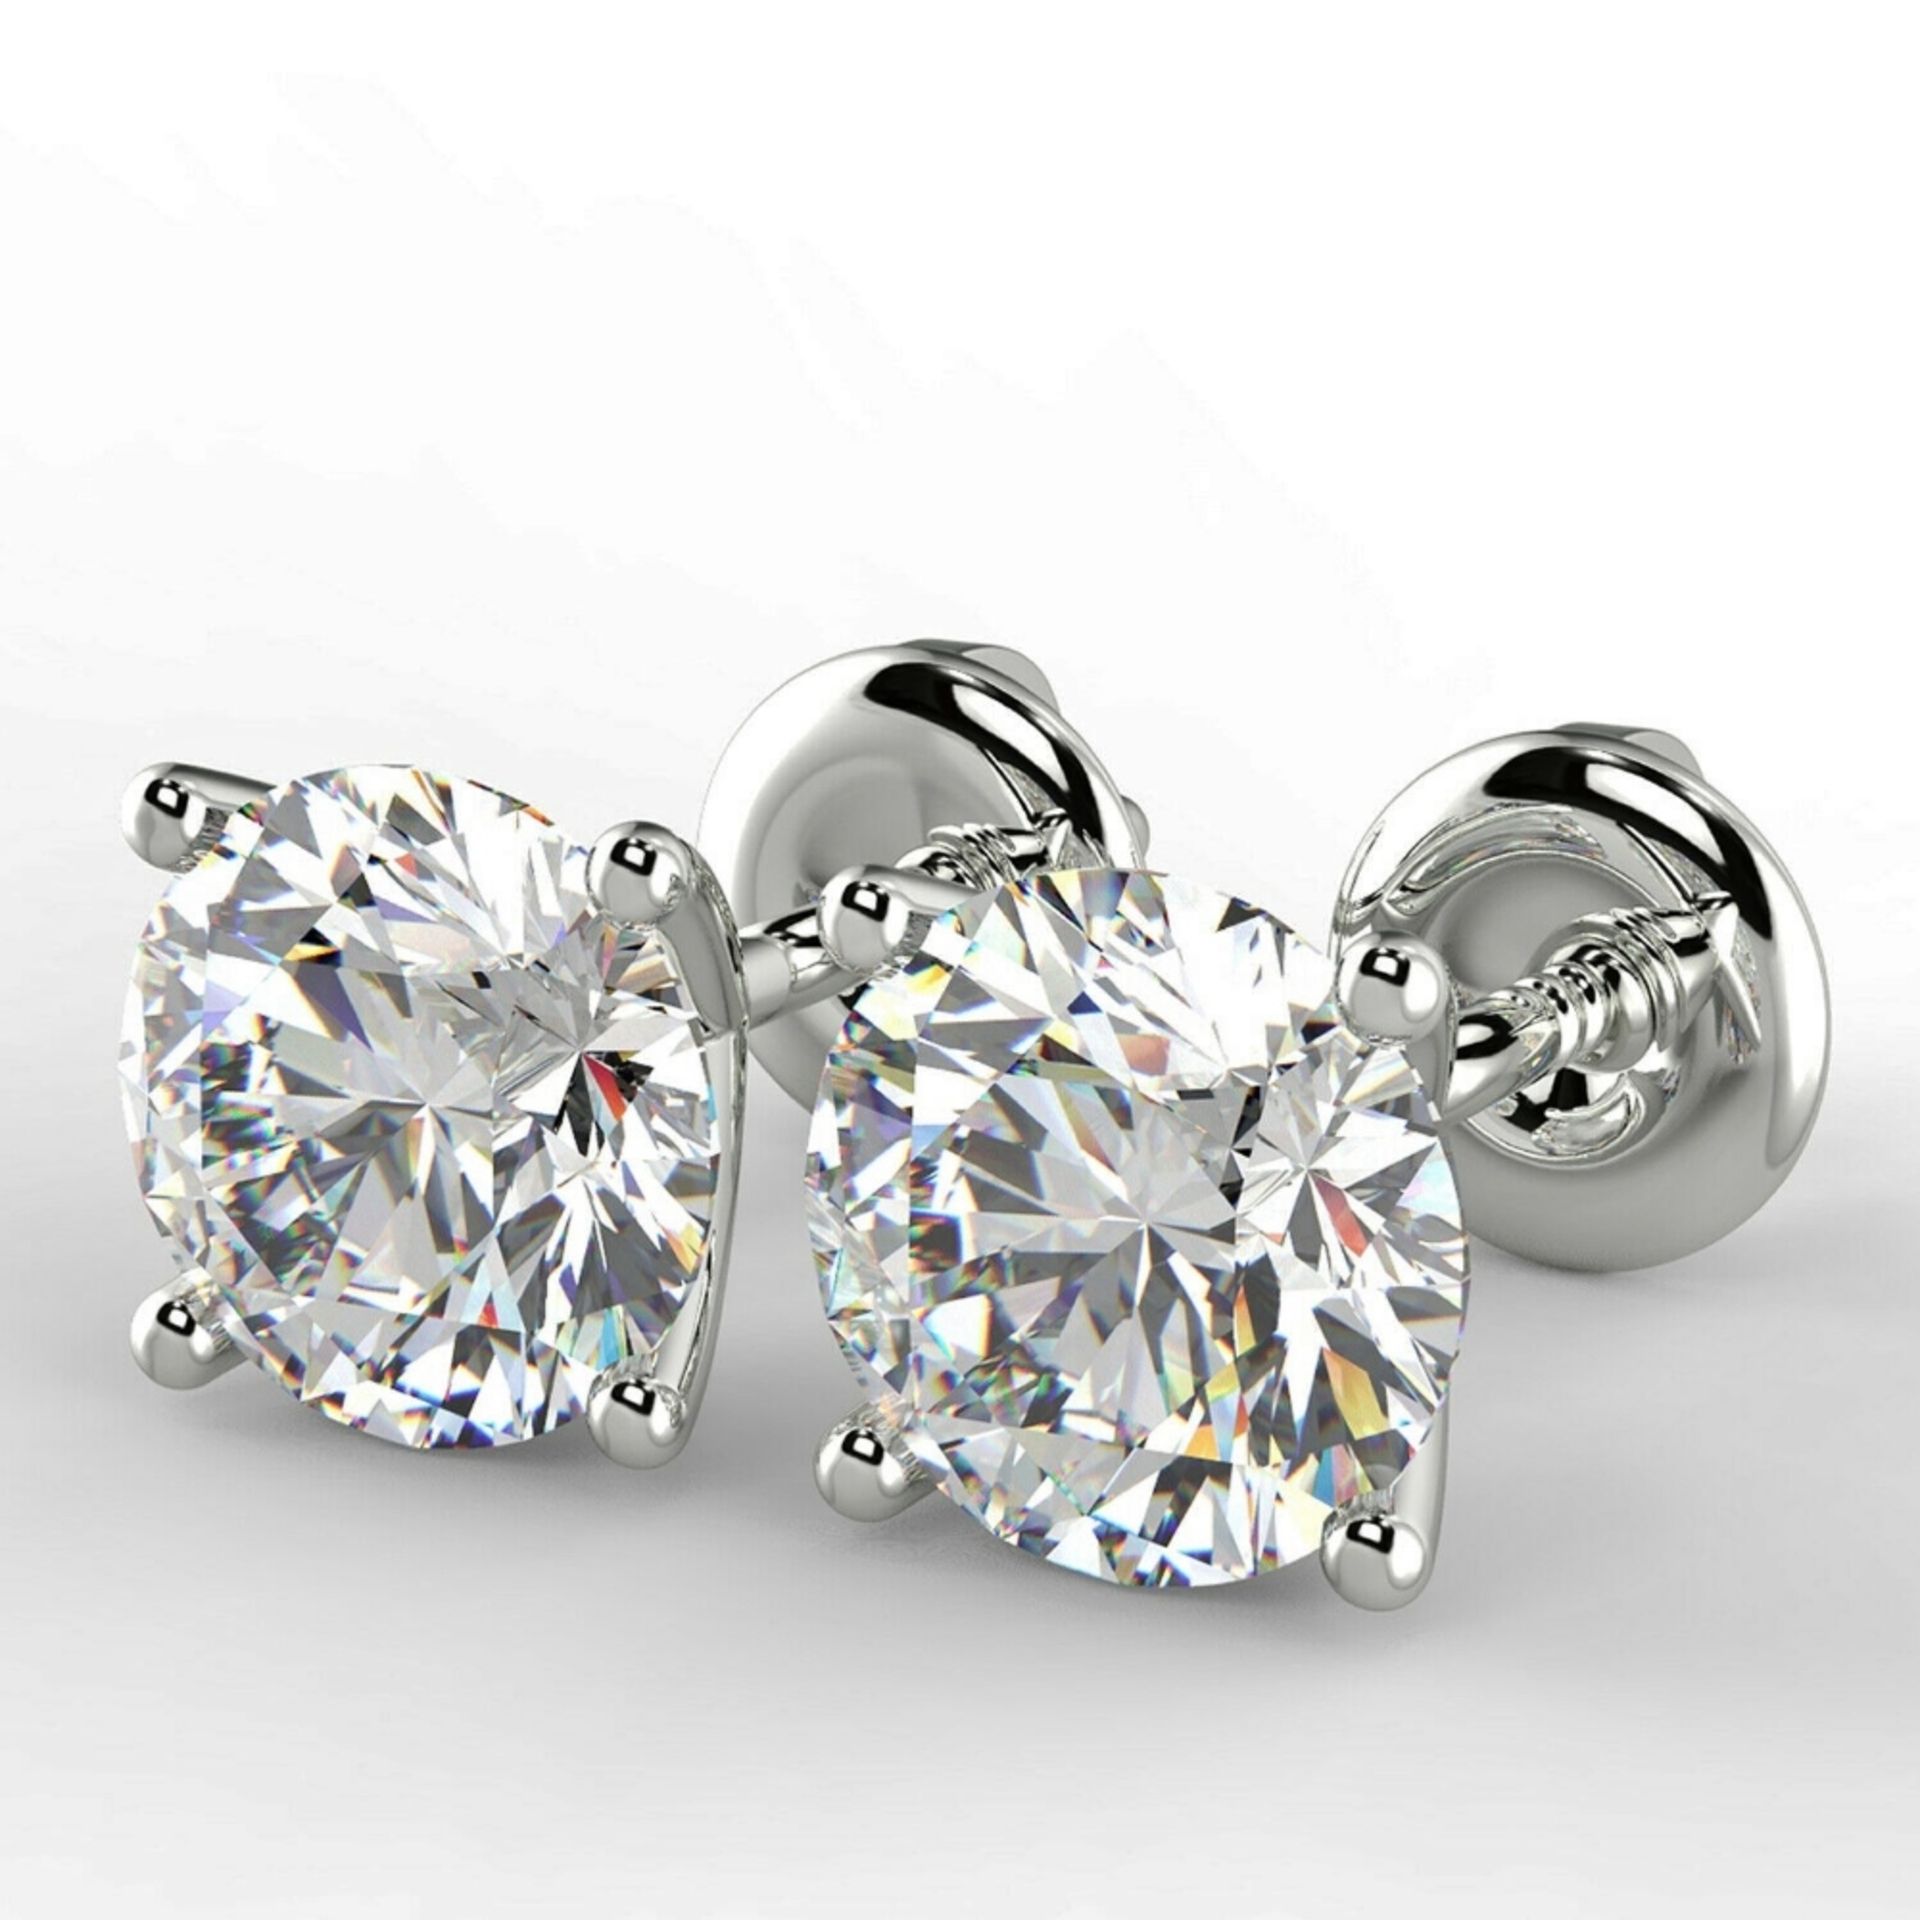 Pair of New 1.42 Carat Round Cut VS2/D Diamond Earrings